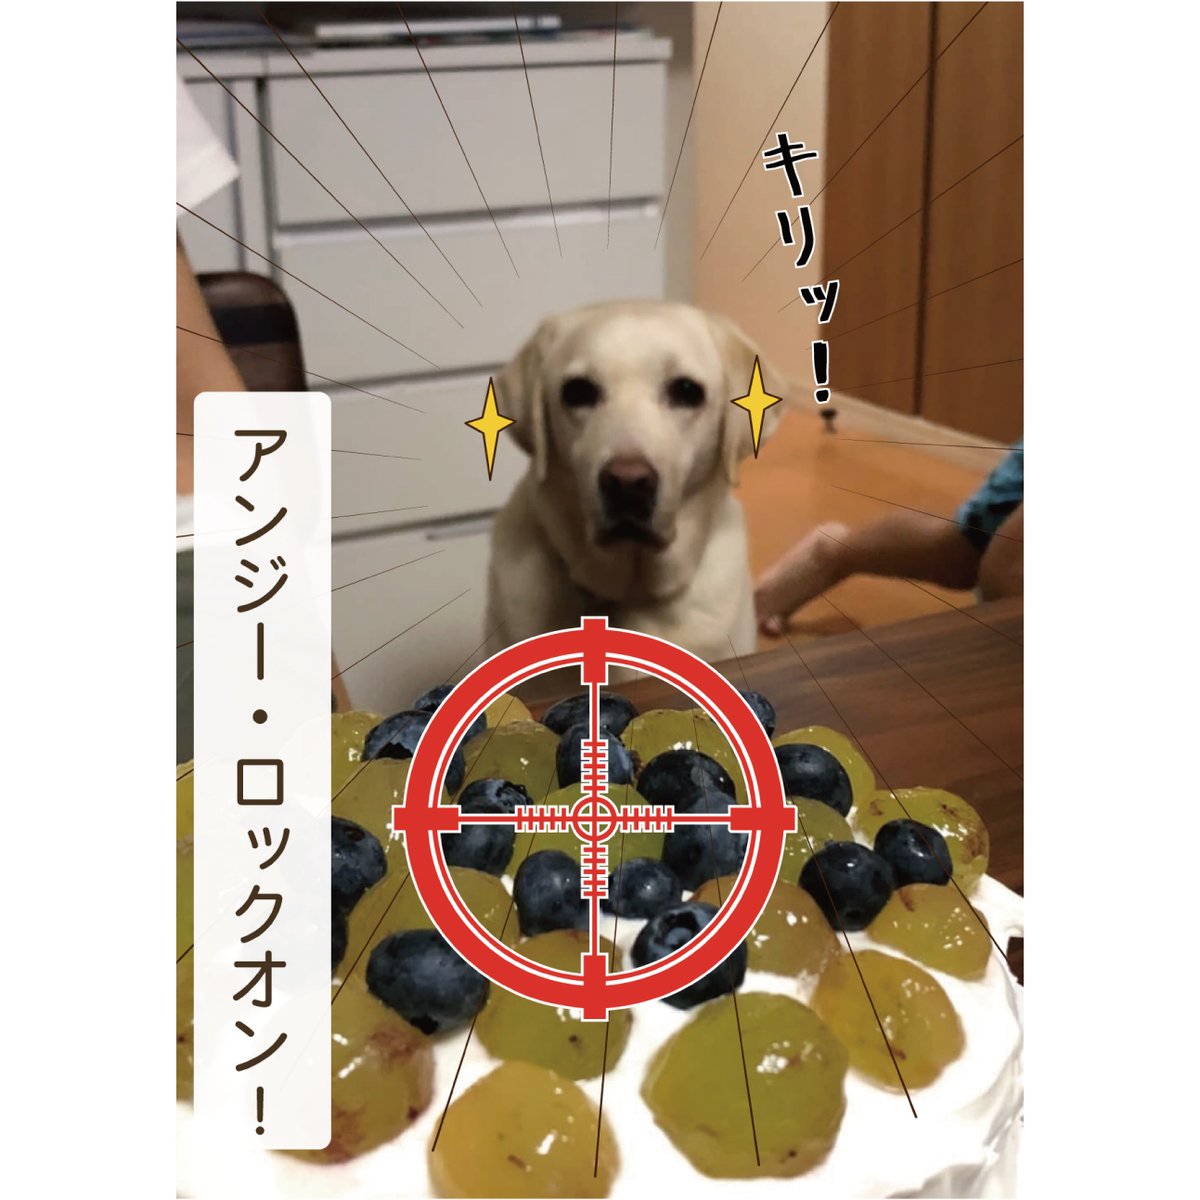 盲導犬アンジーの真剣な目 のイラスト マンガ コスプレ モデル作品 1 件 Twoucan